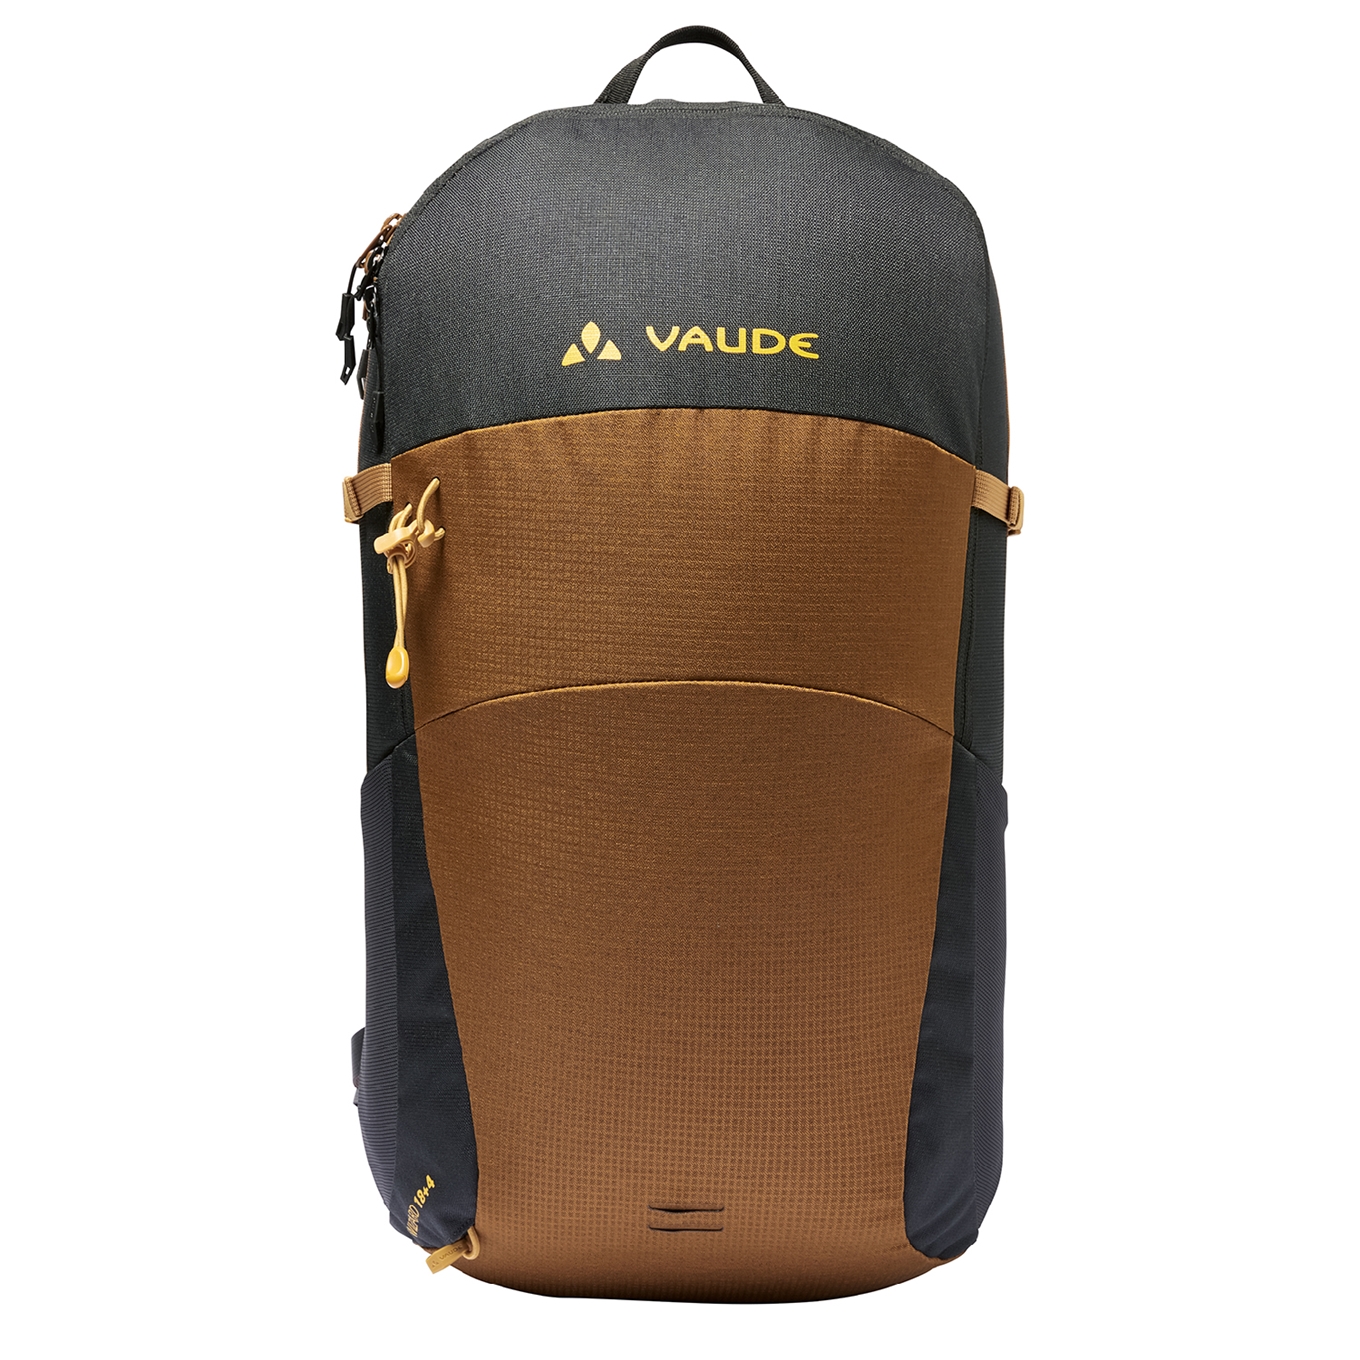 Vaude Wizard 18+4 Backpack black/umbra backpack